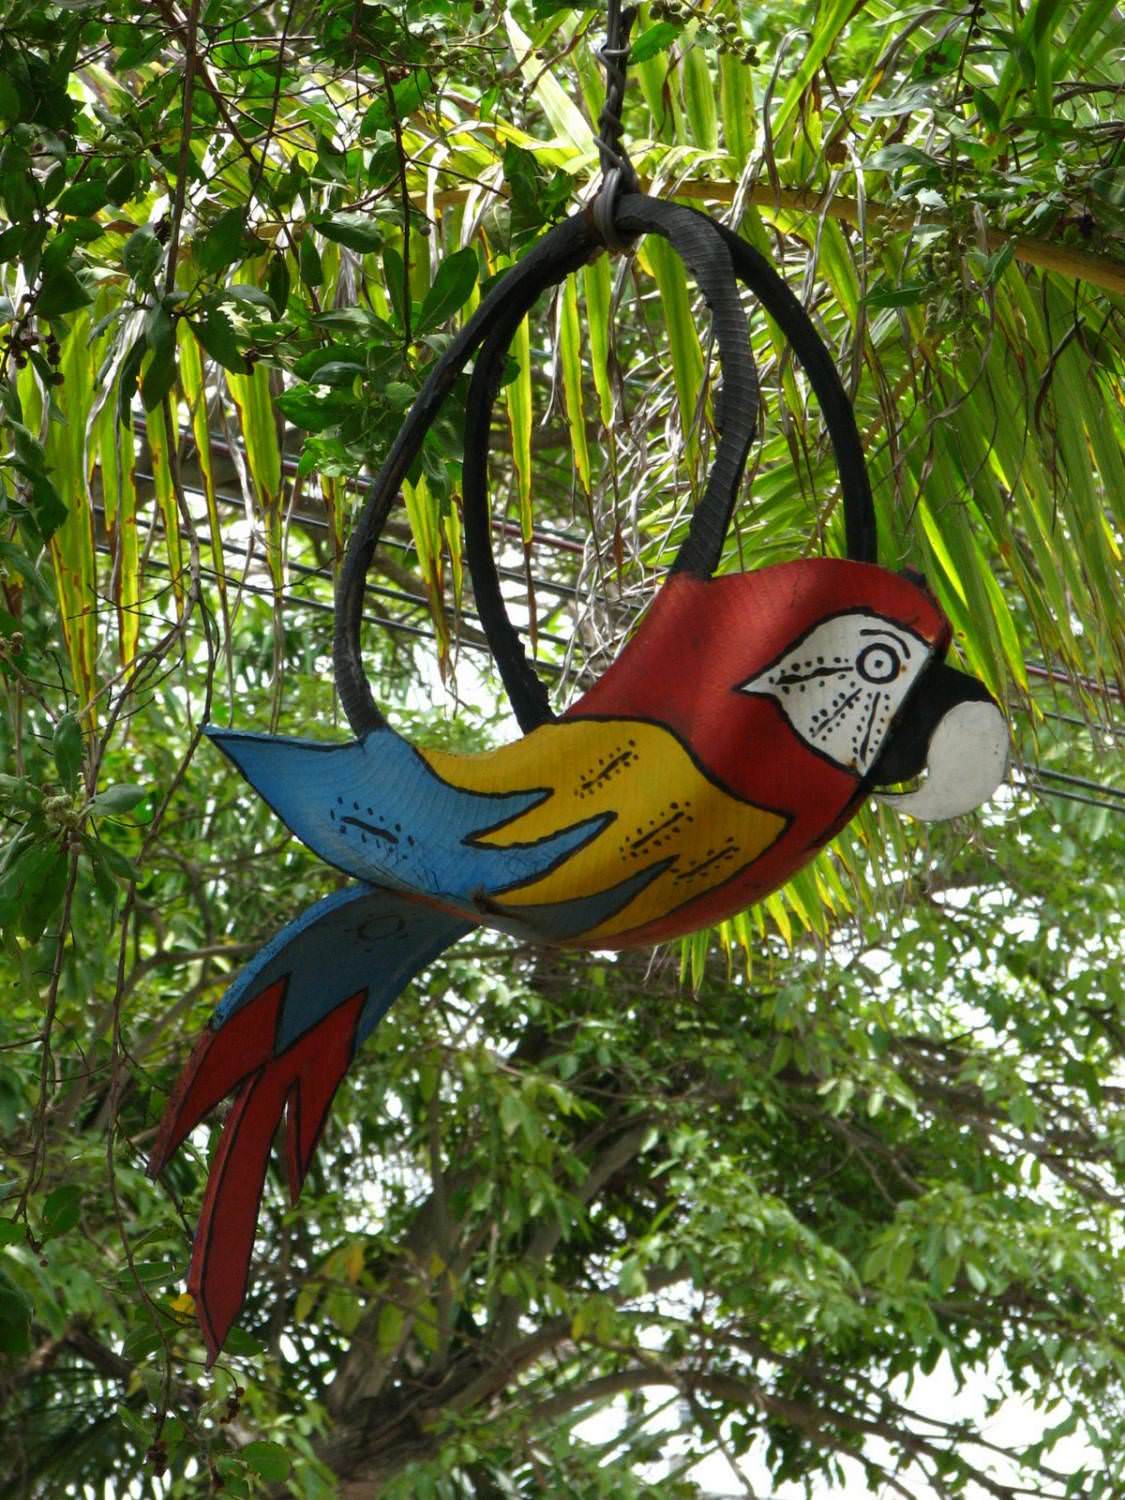 Попугаи и тропические птицы из автопокрышек — красиво и гармонично